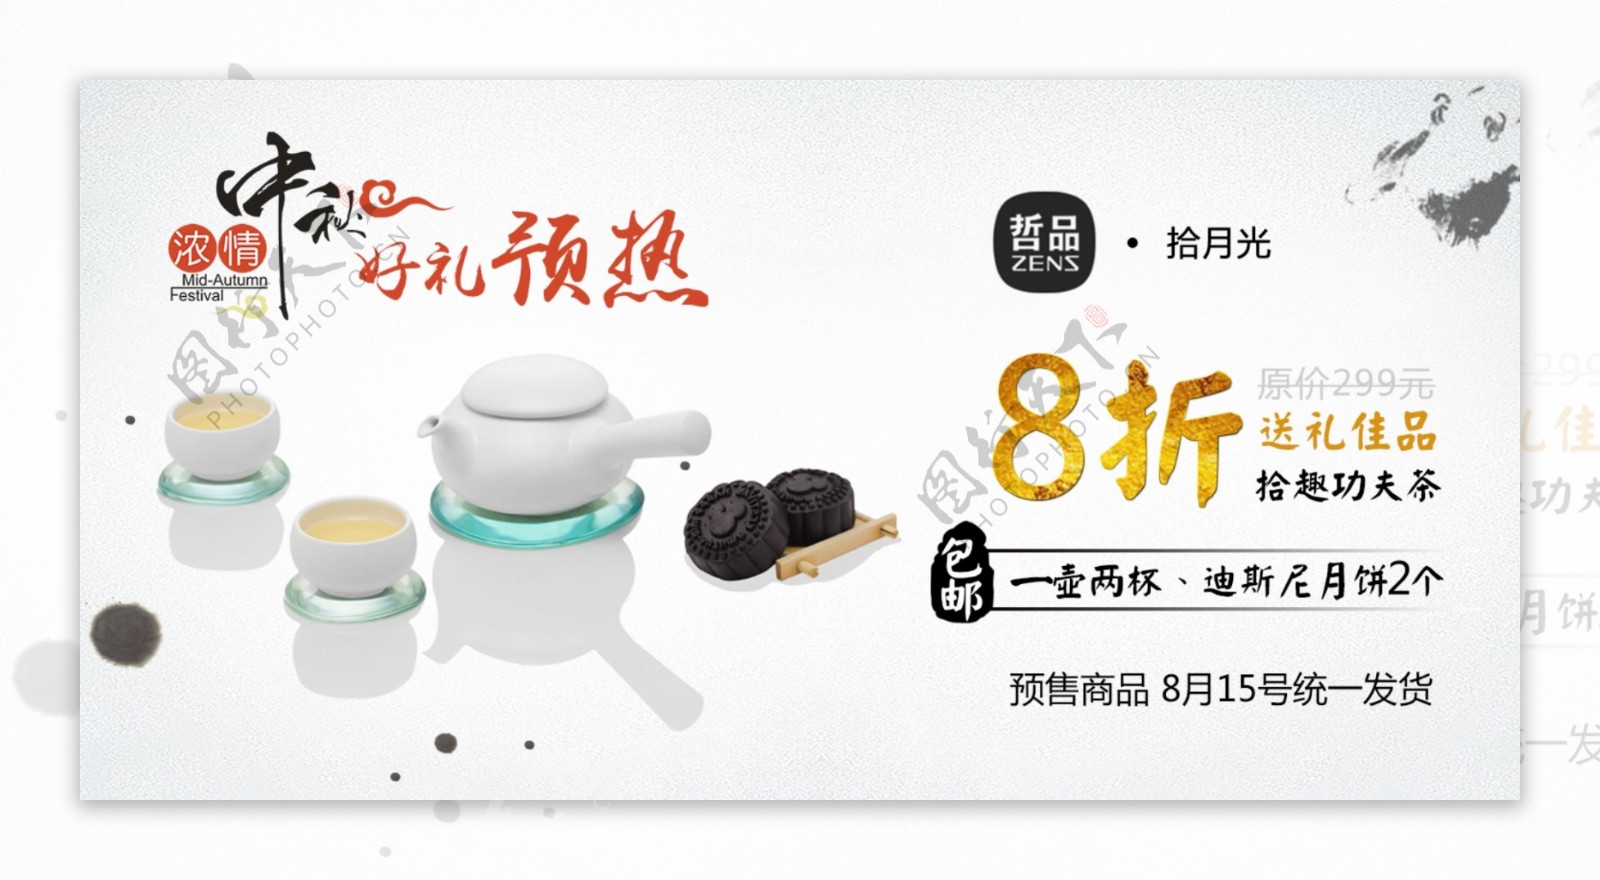 淘宝天猫茶具月饼中秋预热轮播海报